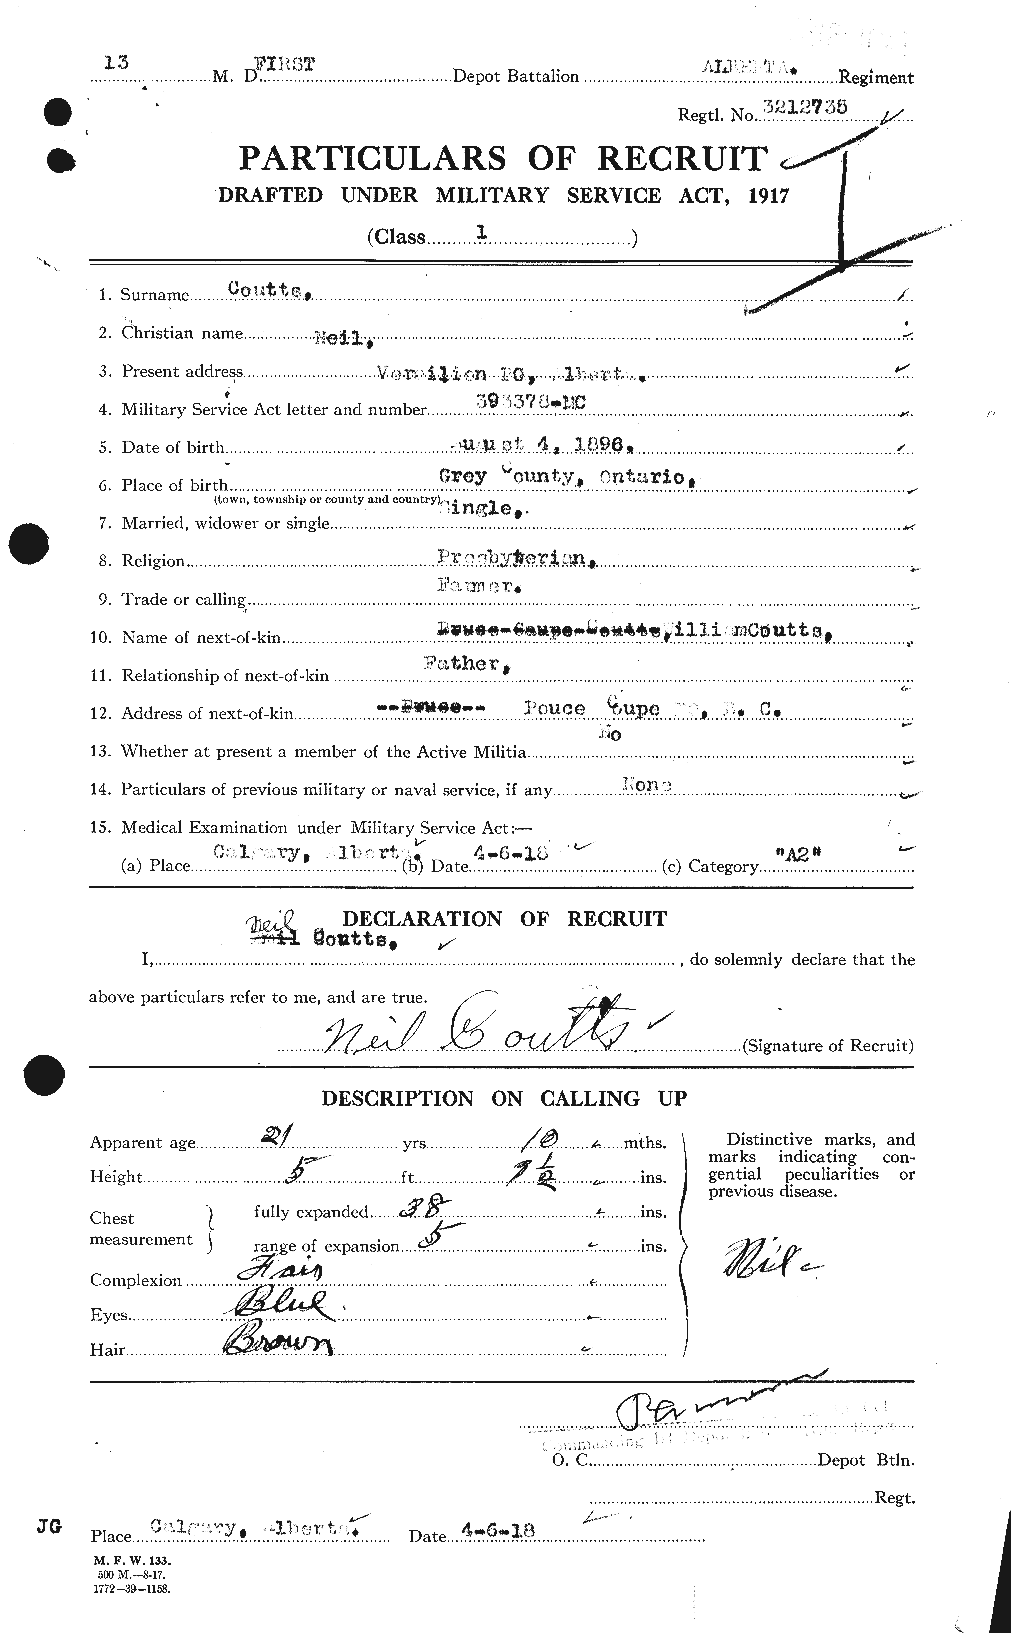 Dossiers du Personnel de la Première Guerre mondiale - CEC 057711a